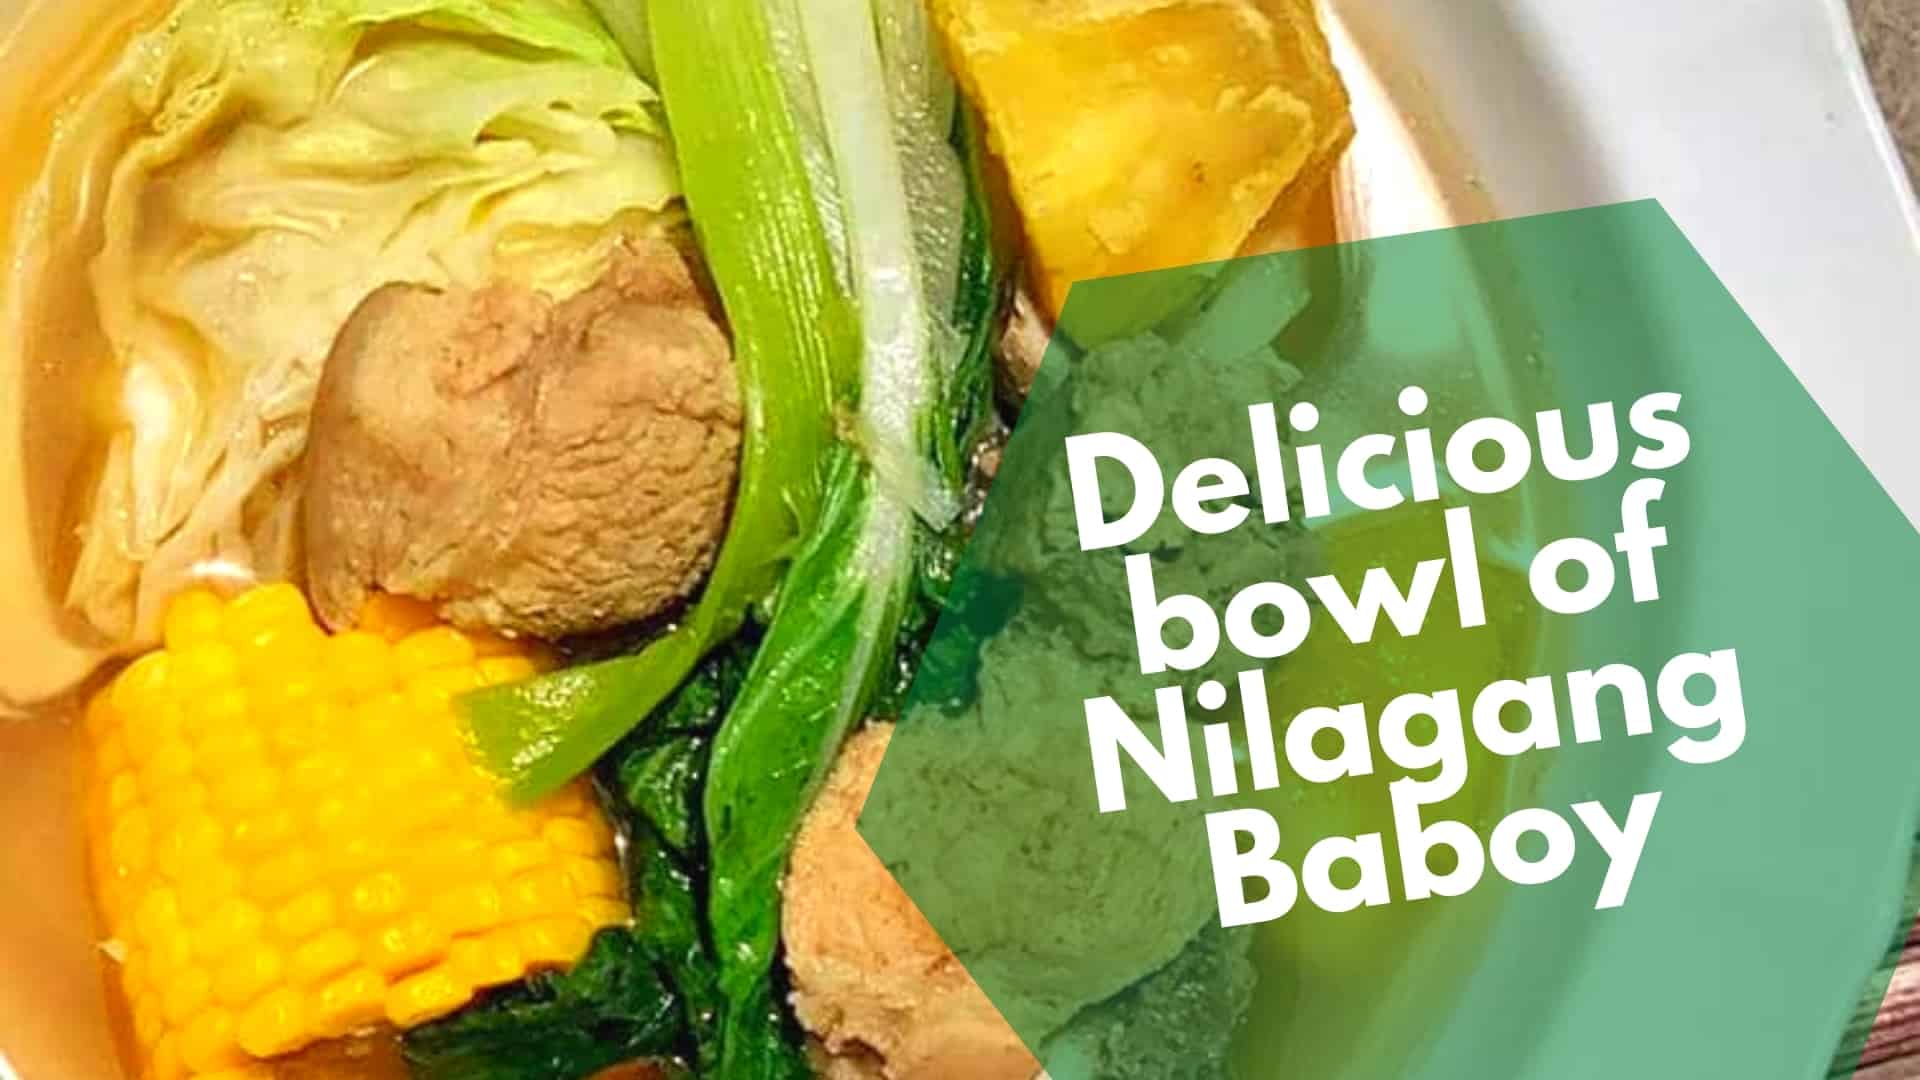 Nilagang baboy resepti (Donuz nilaga): Filippin qaynadılmış donuz əti şorbası